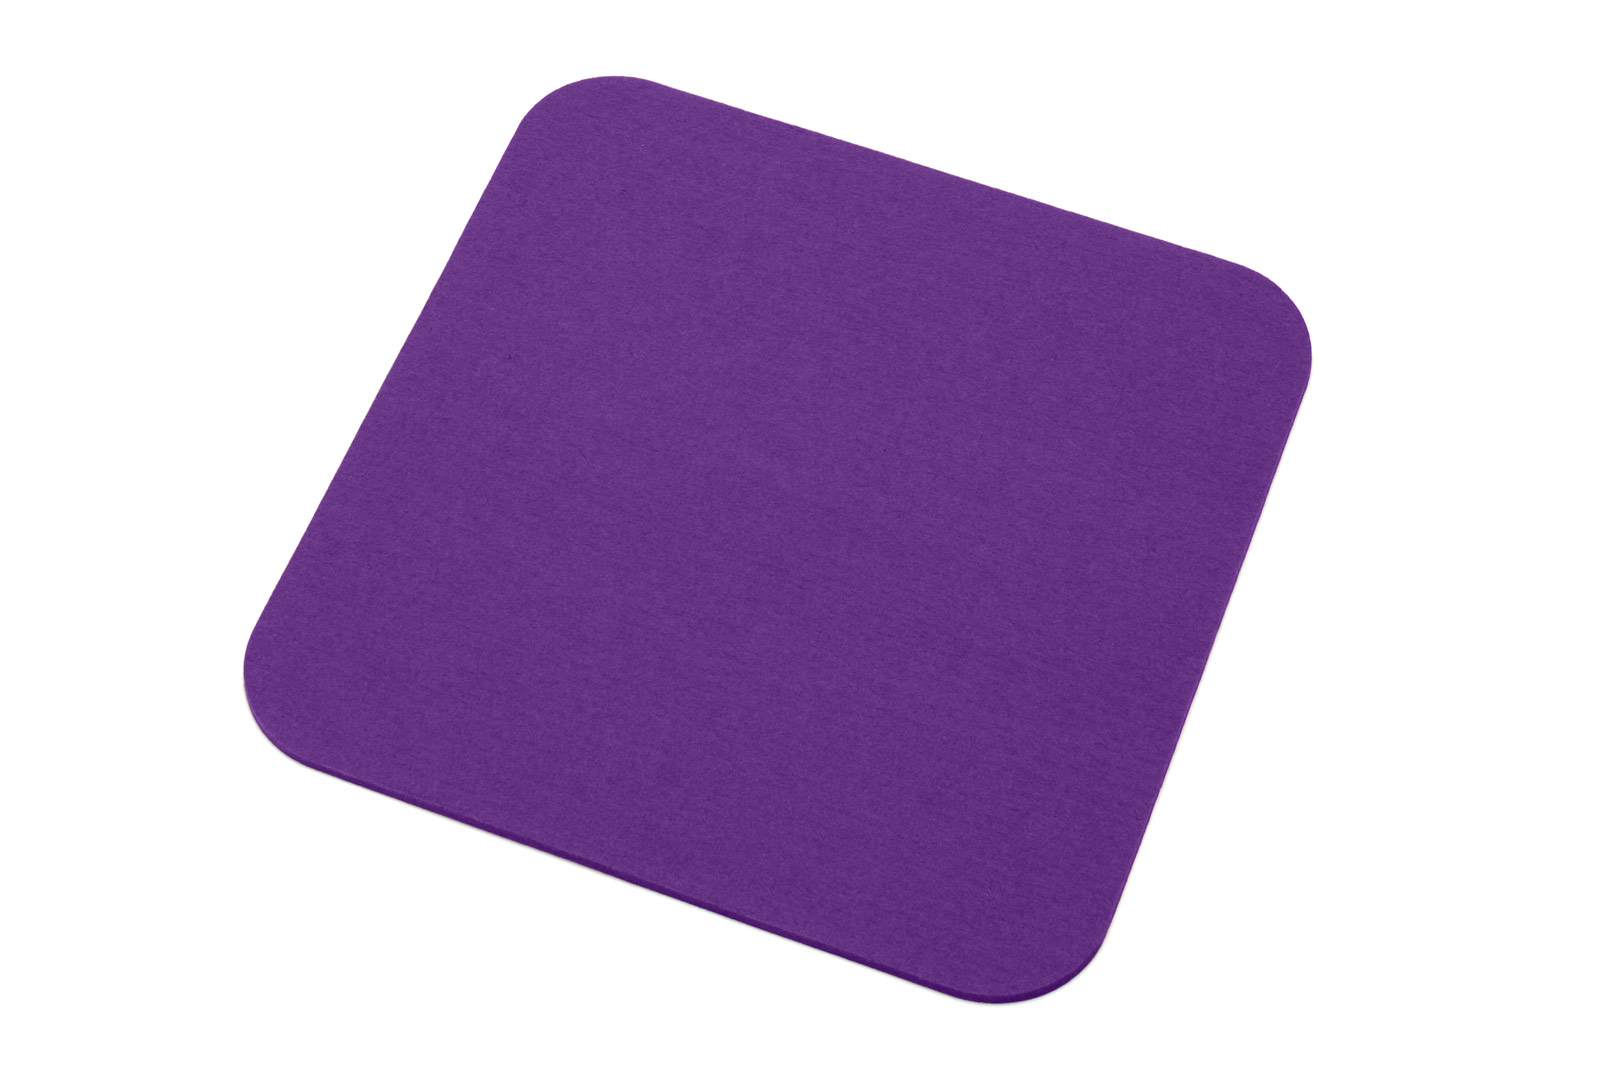 DEIN eckiger Filz Untersetzer mit den runden Ecken, Farbe „Violett“